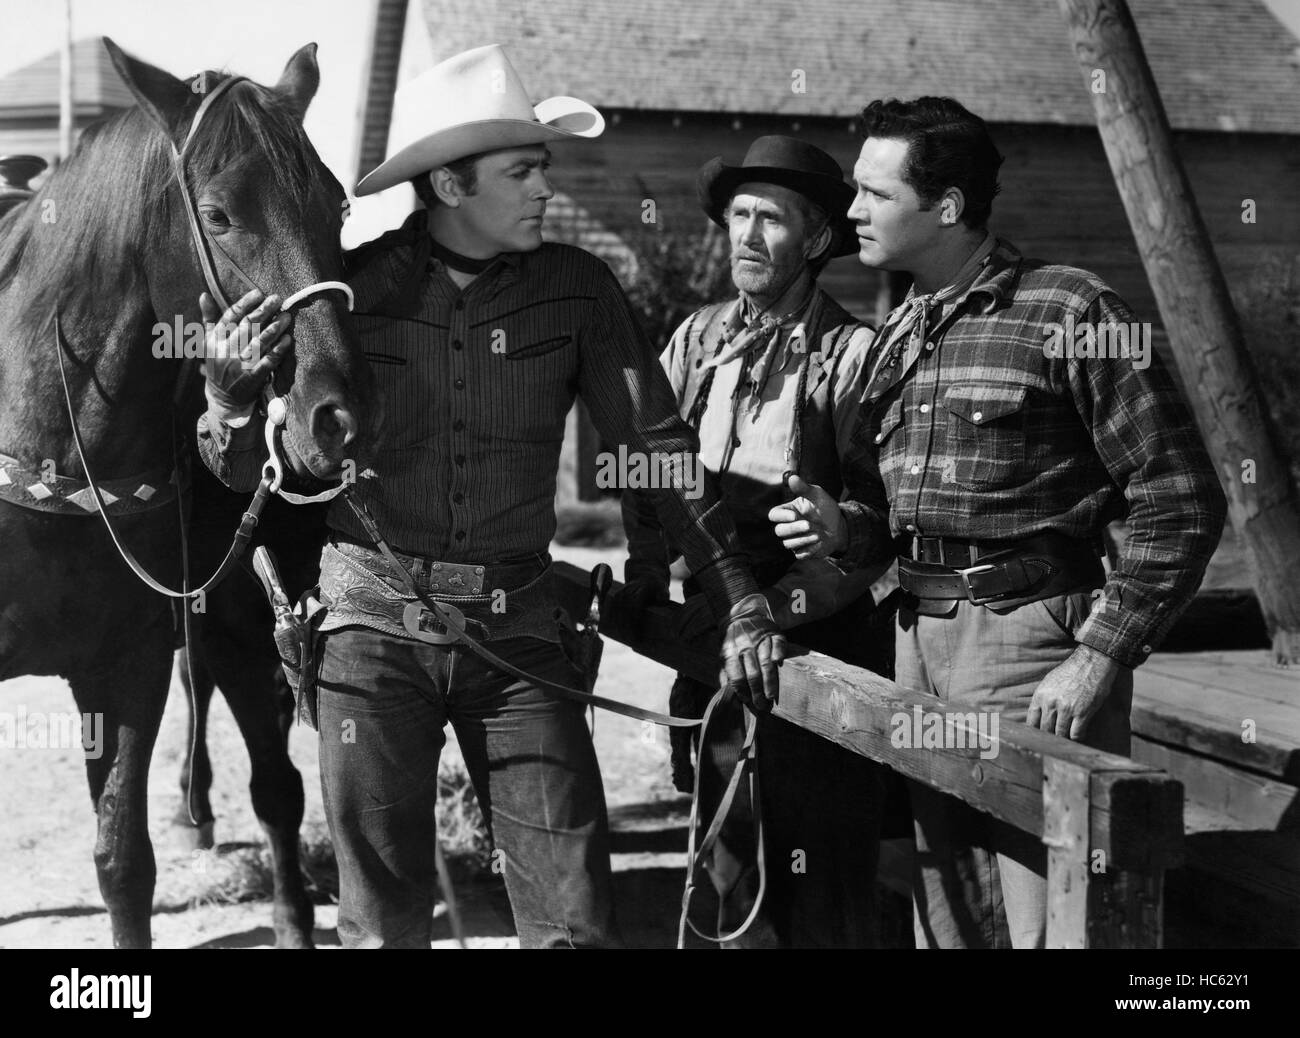 SHERIFF OF WICHITA, from left: Allan Lane, Eddy Waller, Clayton Moore ...